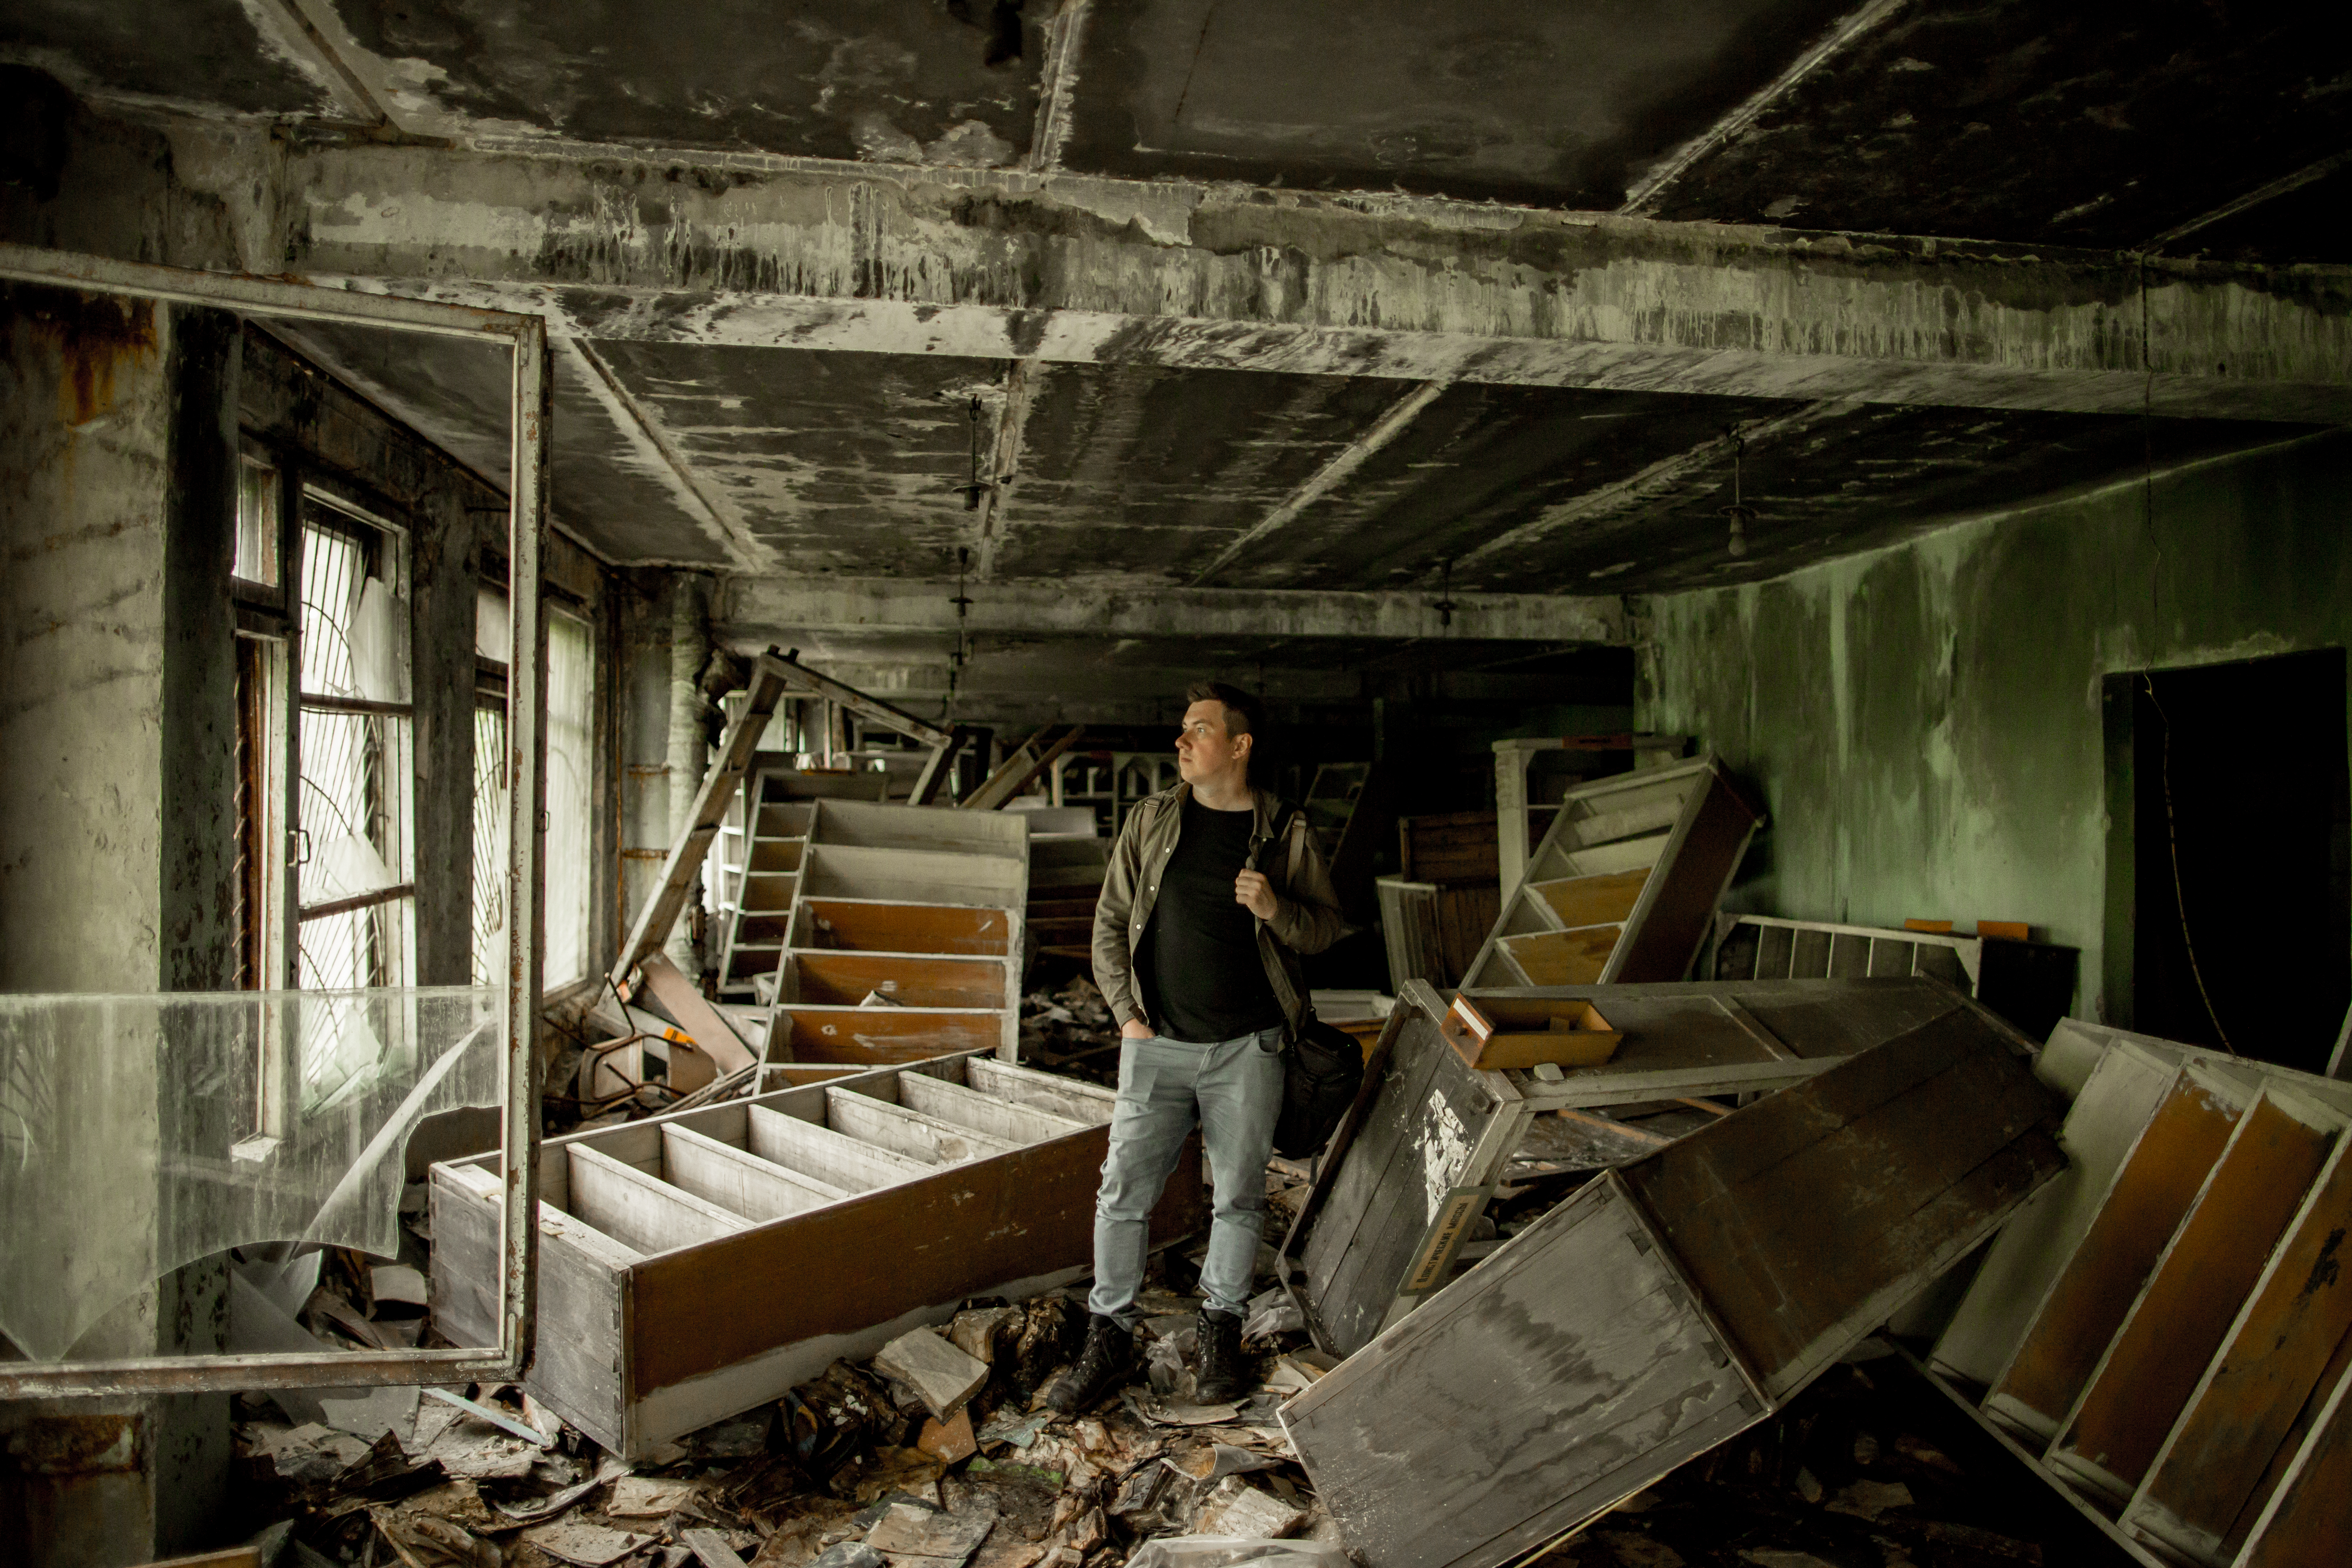 Павел Отдельнов: «В руинах заводских цехов я вижу истории людей»